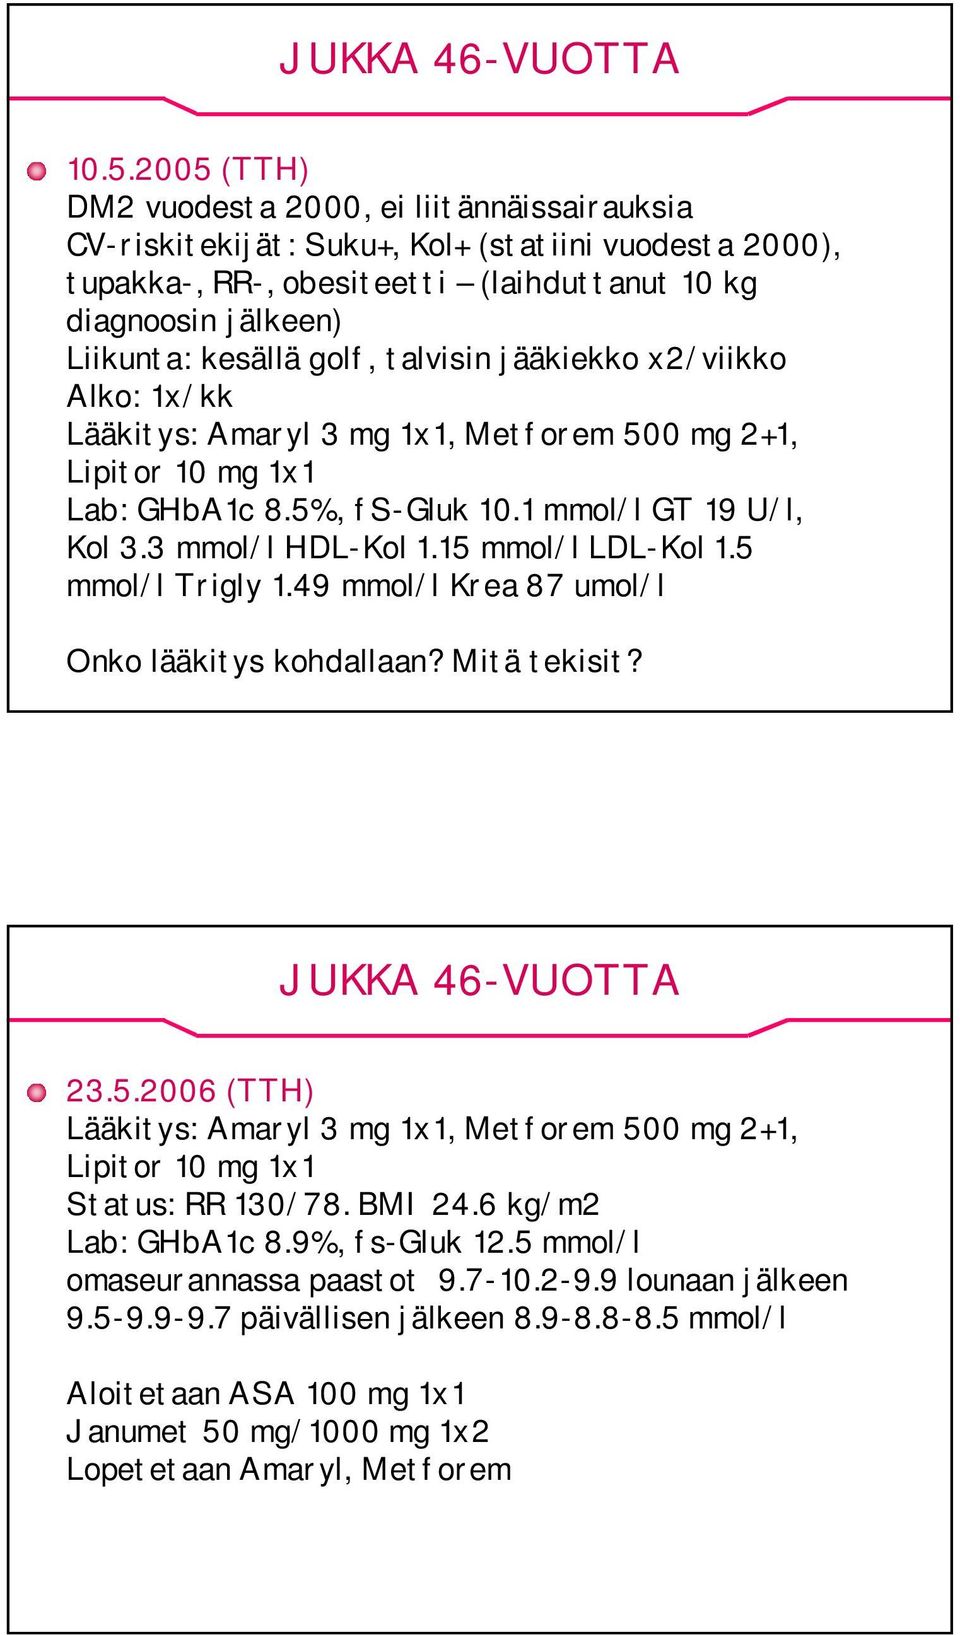 talvisin jääkiekko x2/viikko Alko: 1x/kk Lääkitys: Amaryl 3 mg 1x1, Metforem 500 mg 2+1, Lipitor 10 mg 1x1 Lab: GHbA1c 8.5%, fs-gluk 10.1 mmol/l GT 19 U/l, Kol 3.3 mmol/l HDL-Kol 1.